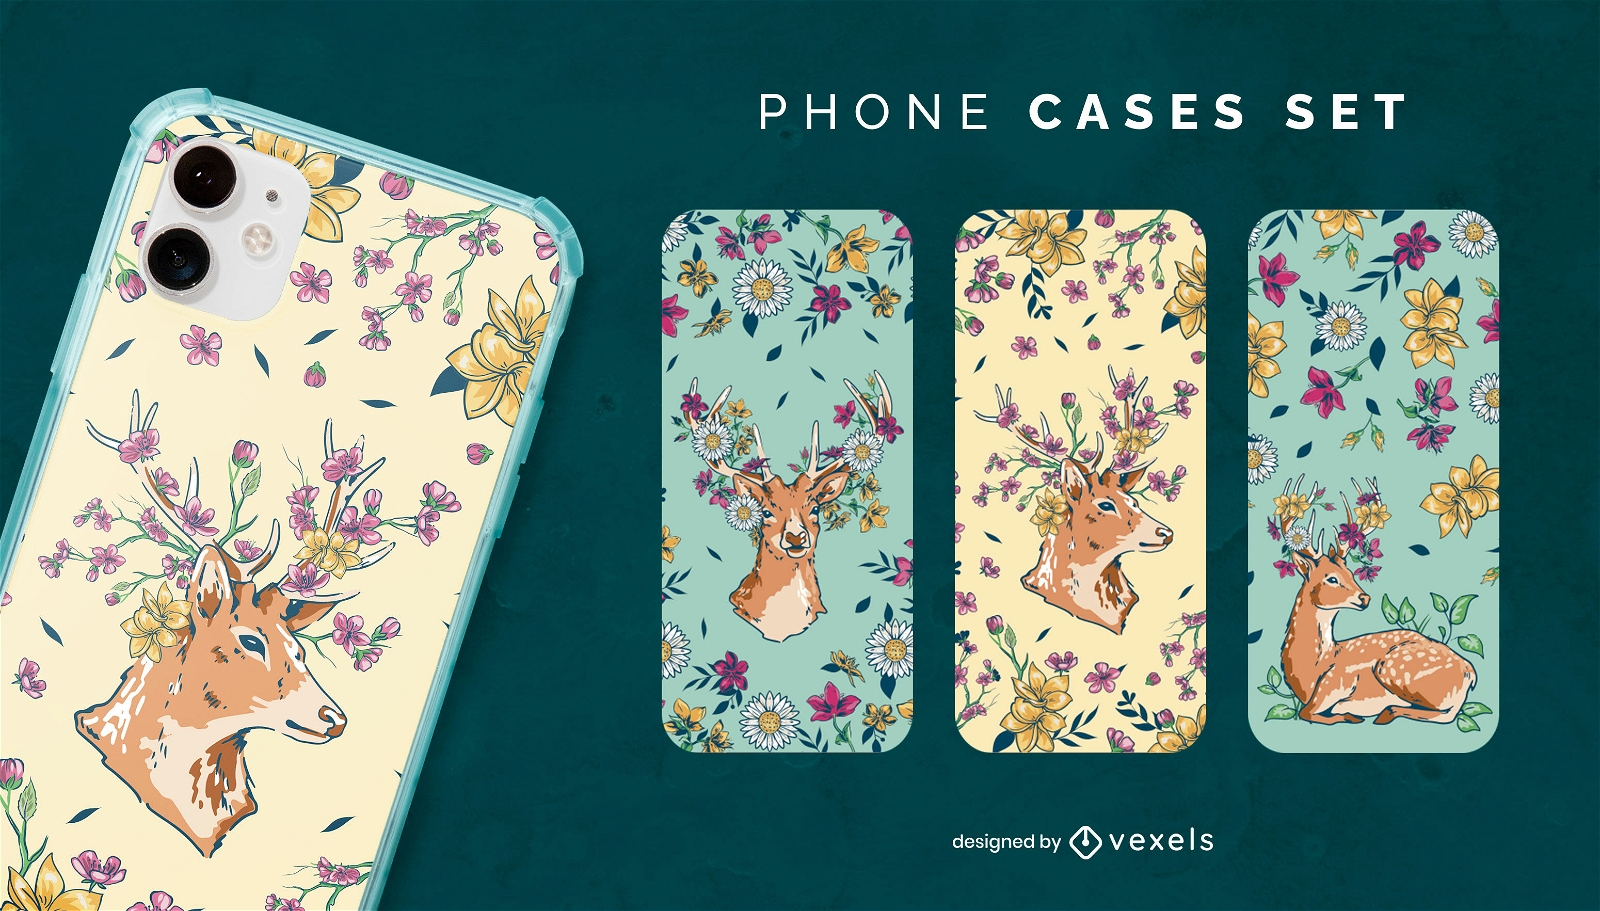 Floral deer phone cases set